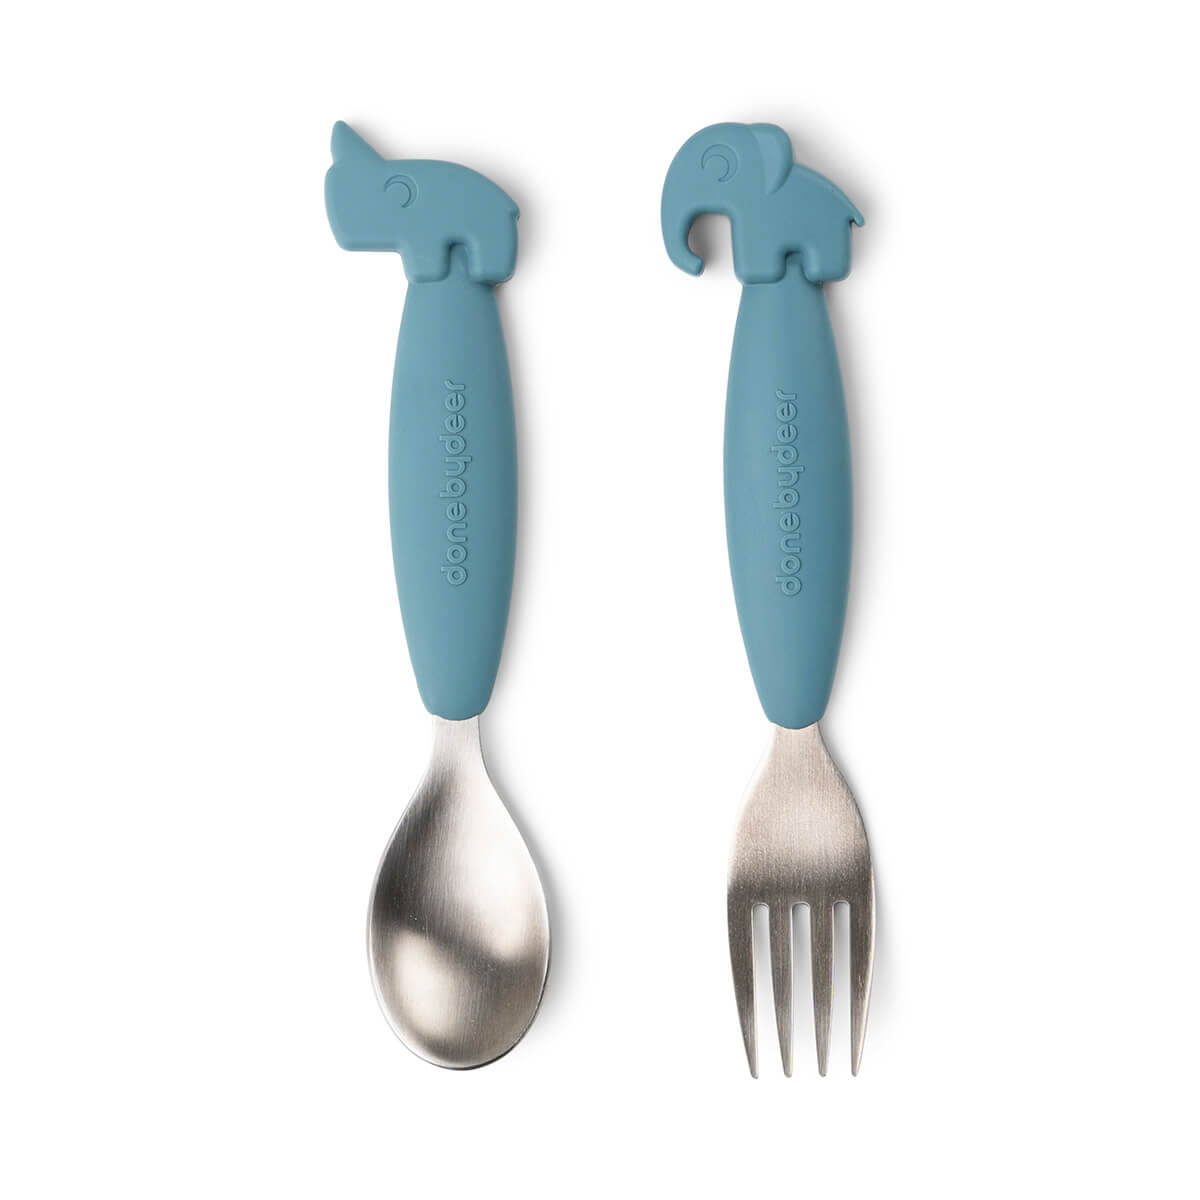 Easy-grip spoon and fork set - Deer friends - Blue